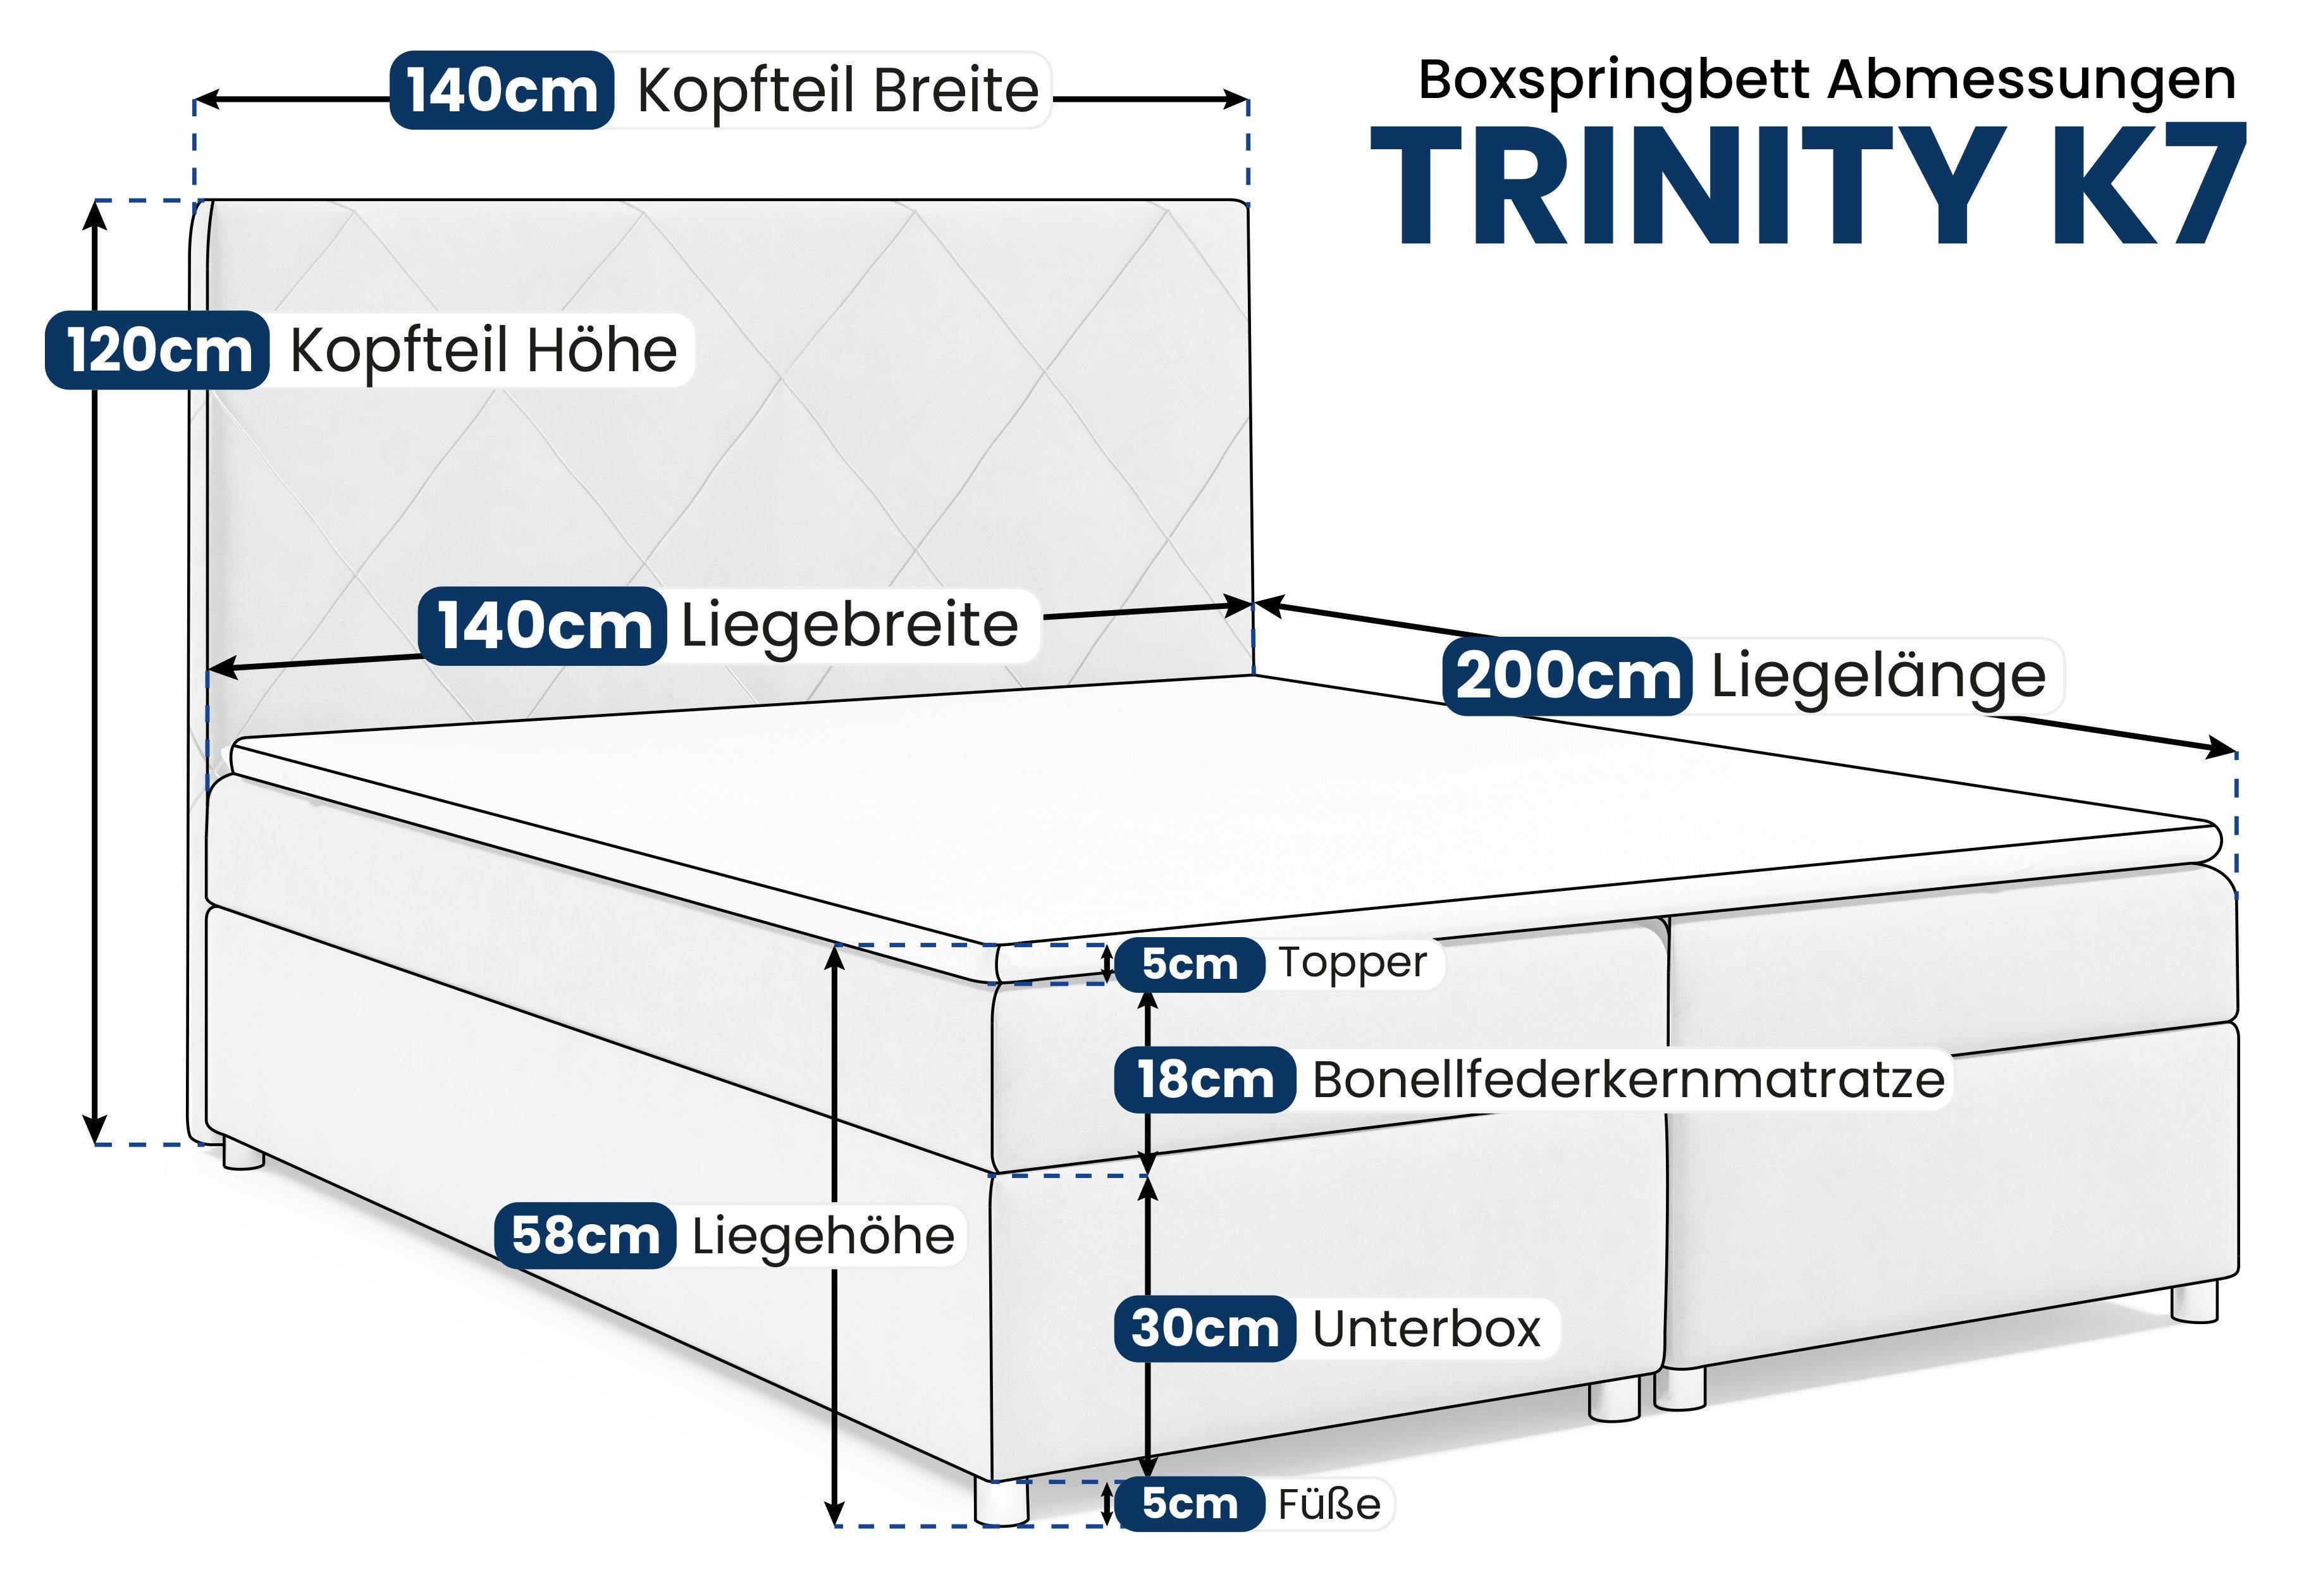 Silber Boxspringbett for Trinity K7, Best und mit Topper Bettkasten Home